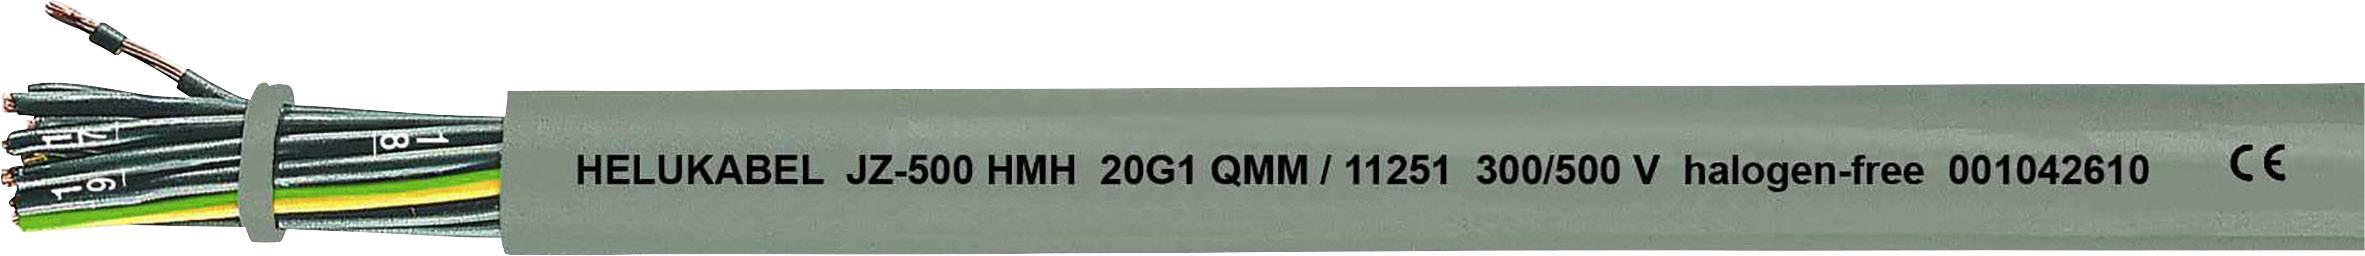 HELUKABEL JZ-500 HMH Steuerleitung 4 G 0.50 mm² Grau 11203-1000 1000 m